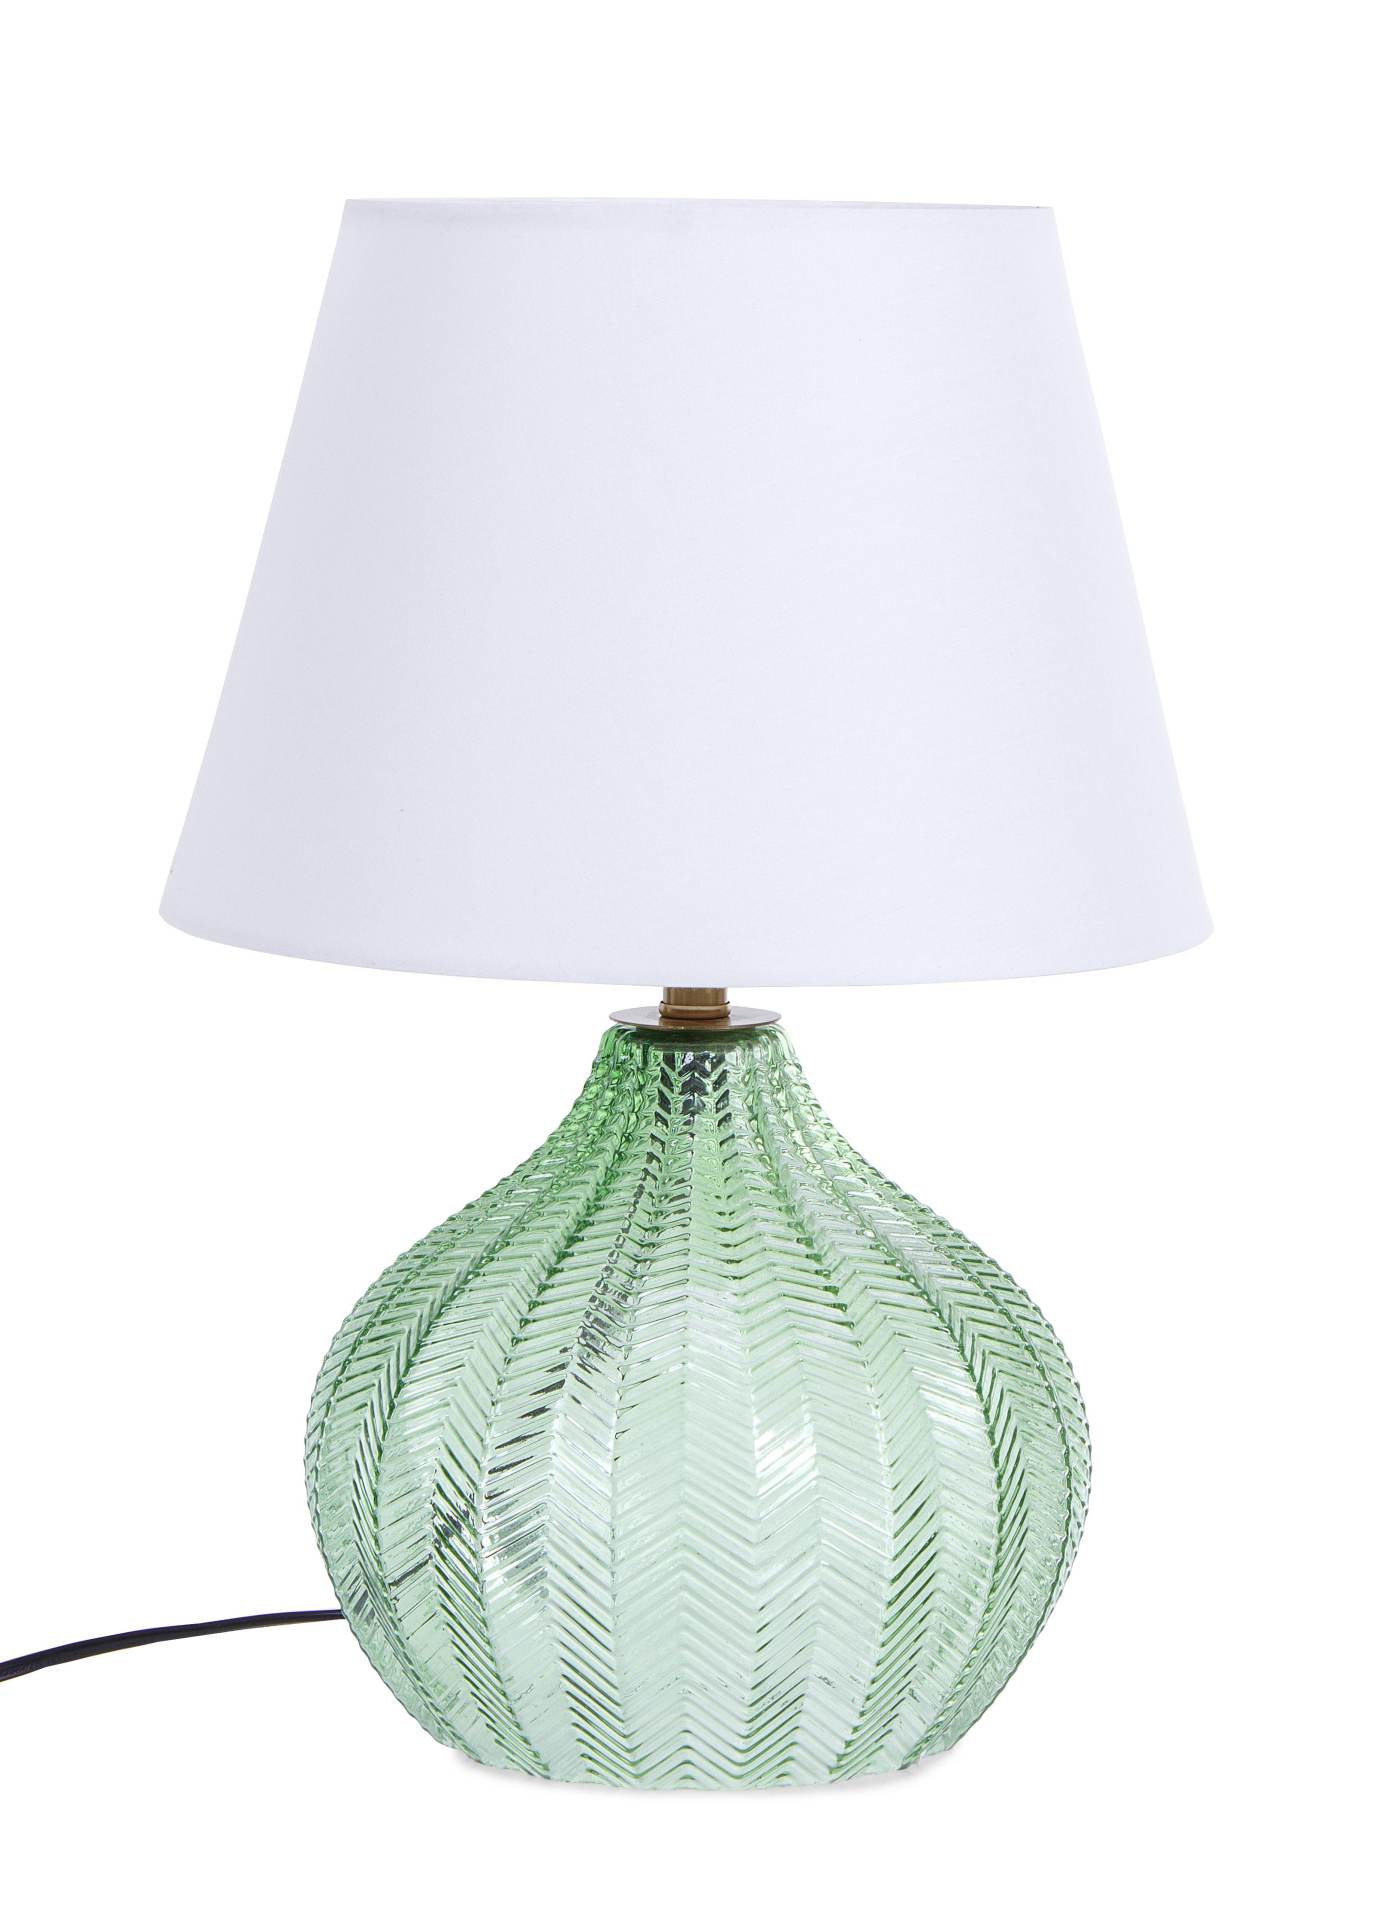 Die Tischleuchte Gleaming überzeugt mit ihrem klassischen Design. Gefertigt wurde sie aus Glas, welches einen grünen Farbton besitzt. Der Lampenschirm ist aus Terylen und hat eine weiße Farbe. Die Lampe besitzt eine Höhe von 45 cm.